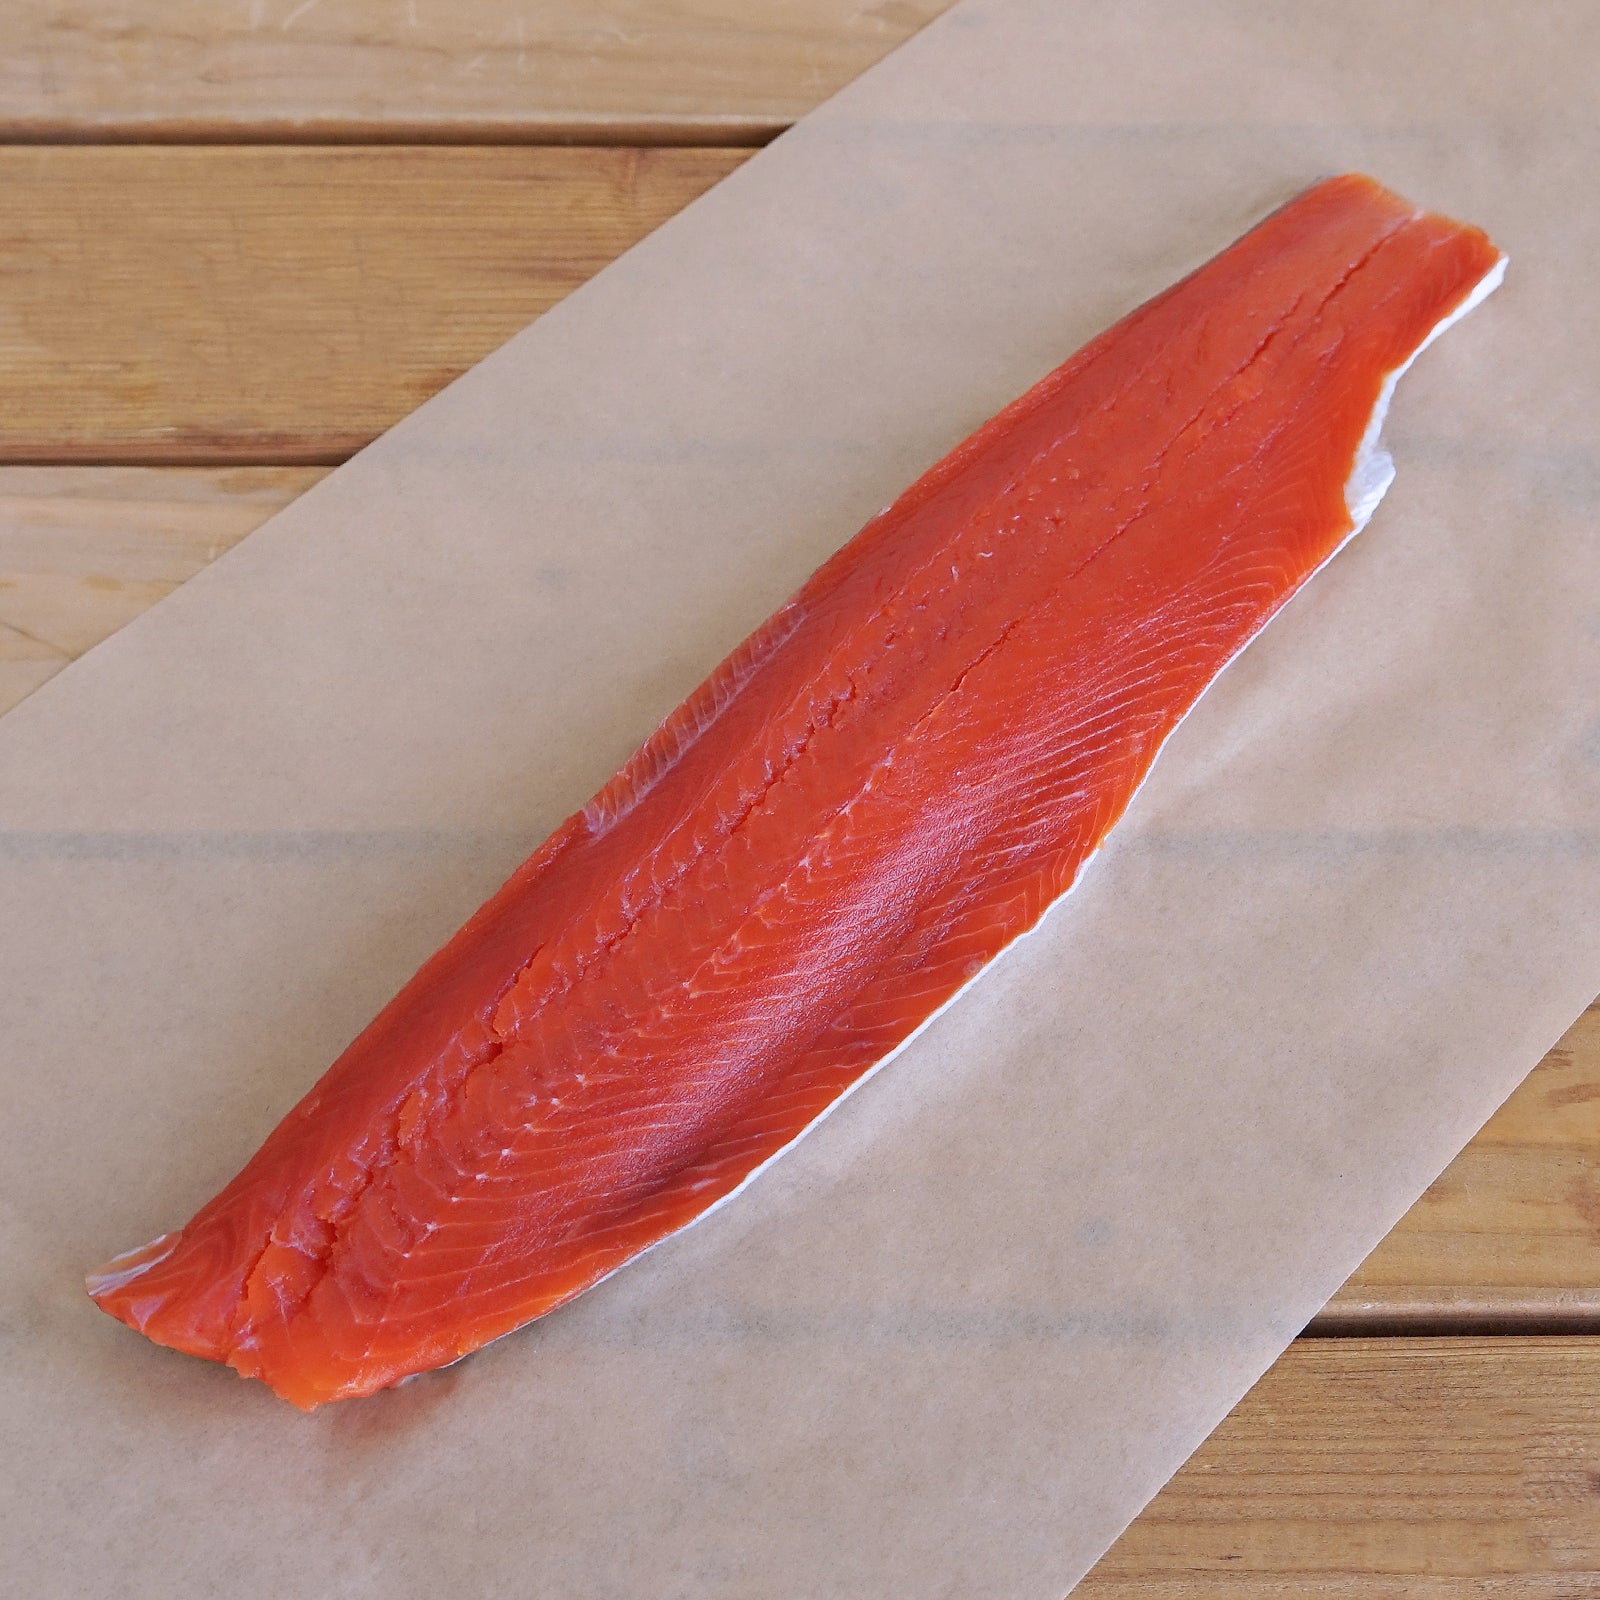 天然 高級 紅鮭 サーモン フィレ 半身 皮つき カナダ産 (500g) - ホライズンファームズ